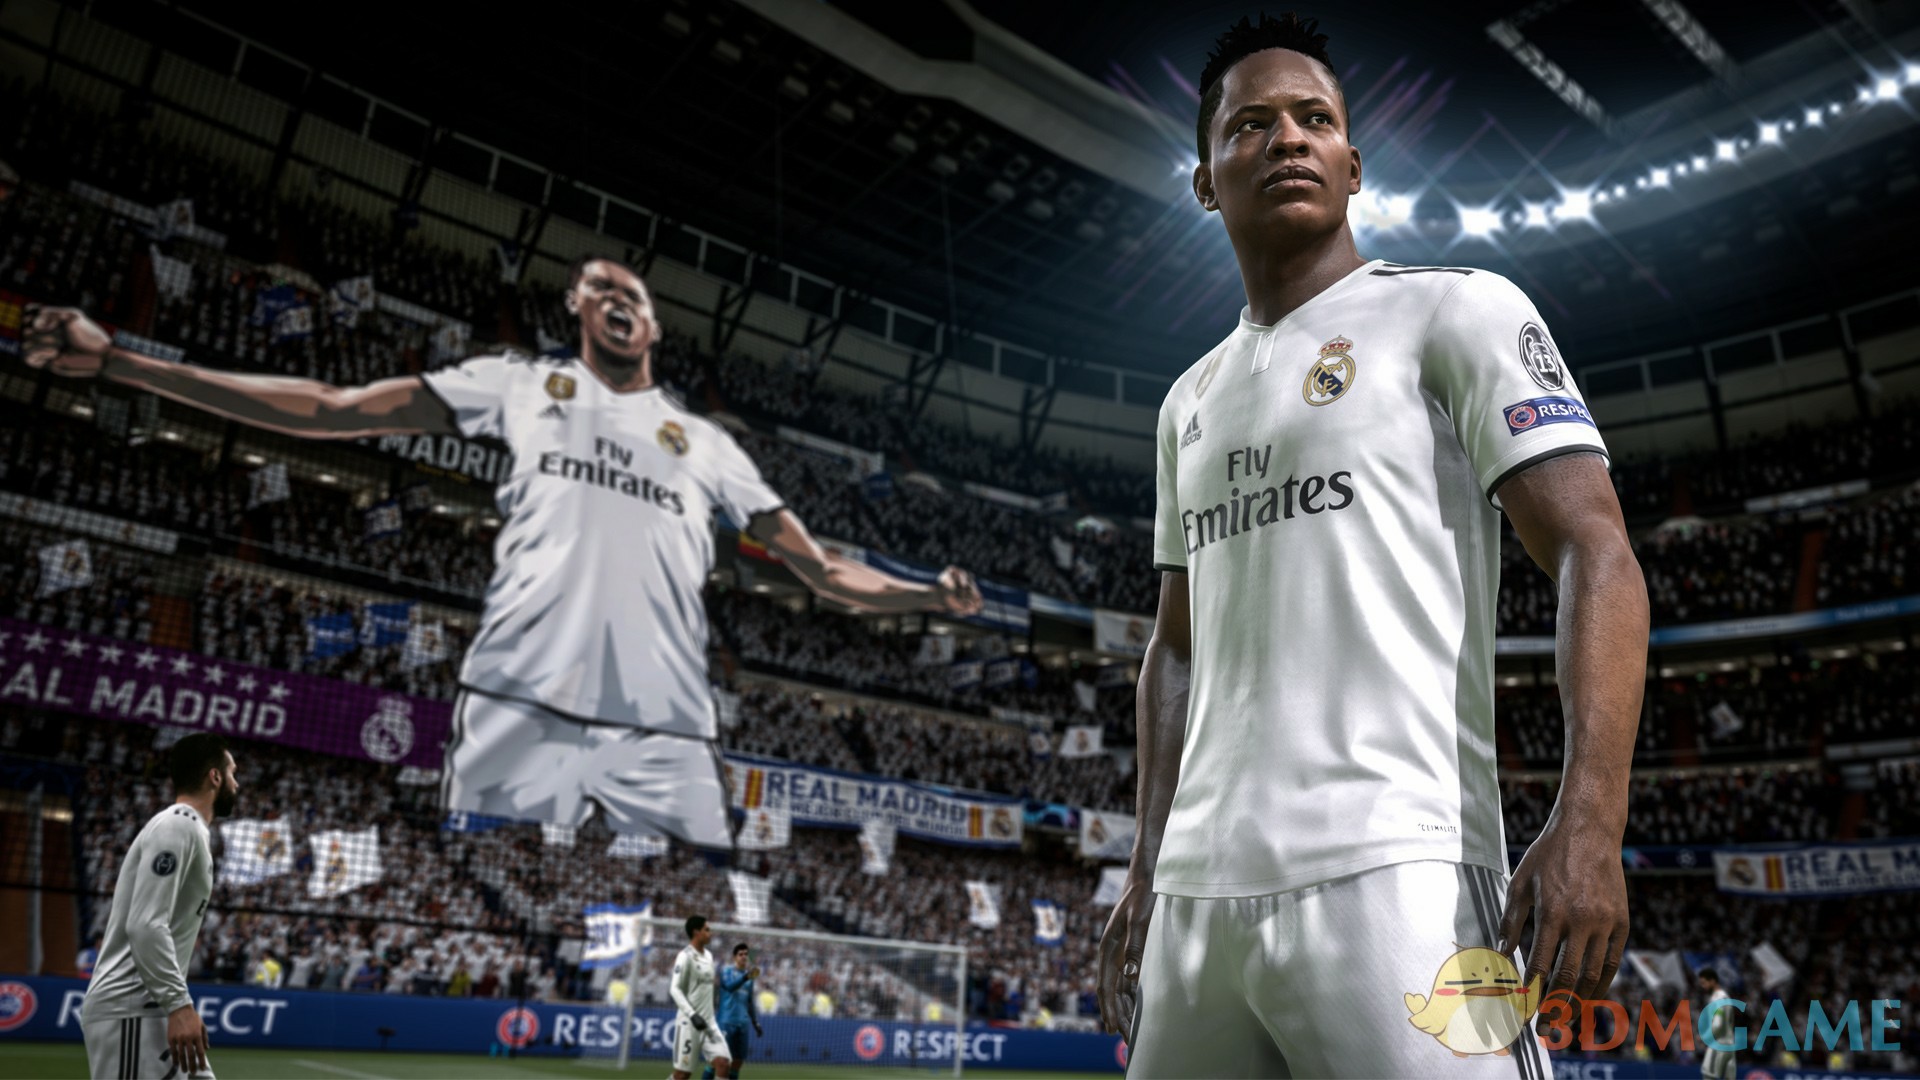 《FIFA 19》官方中文PC終極版 Origin正版分流